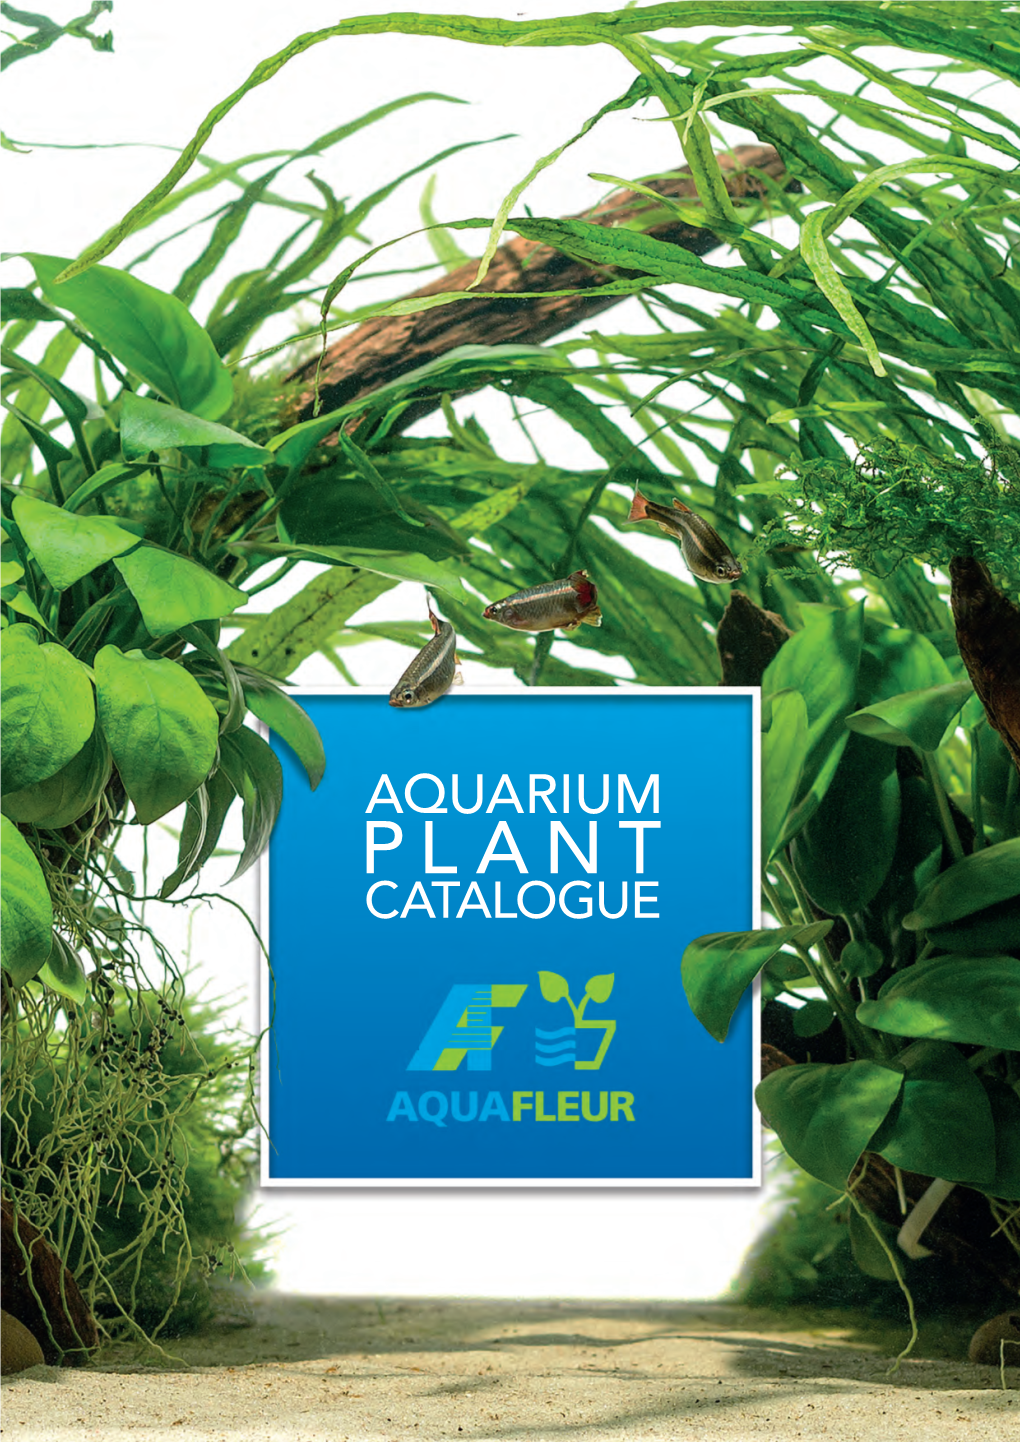 Aquarium Plant Catalogue Top Quality Aquarium Plants